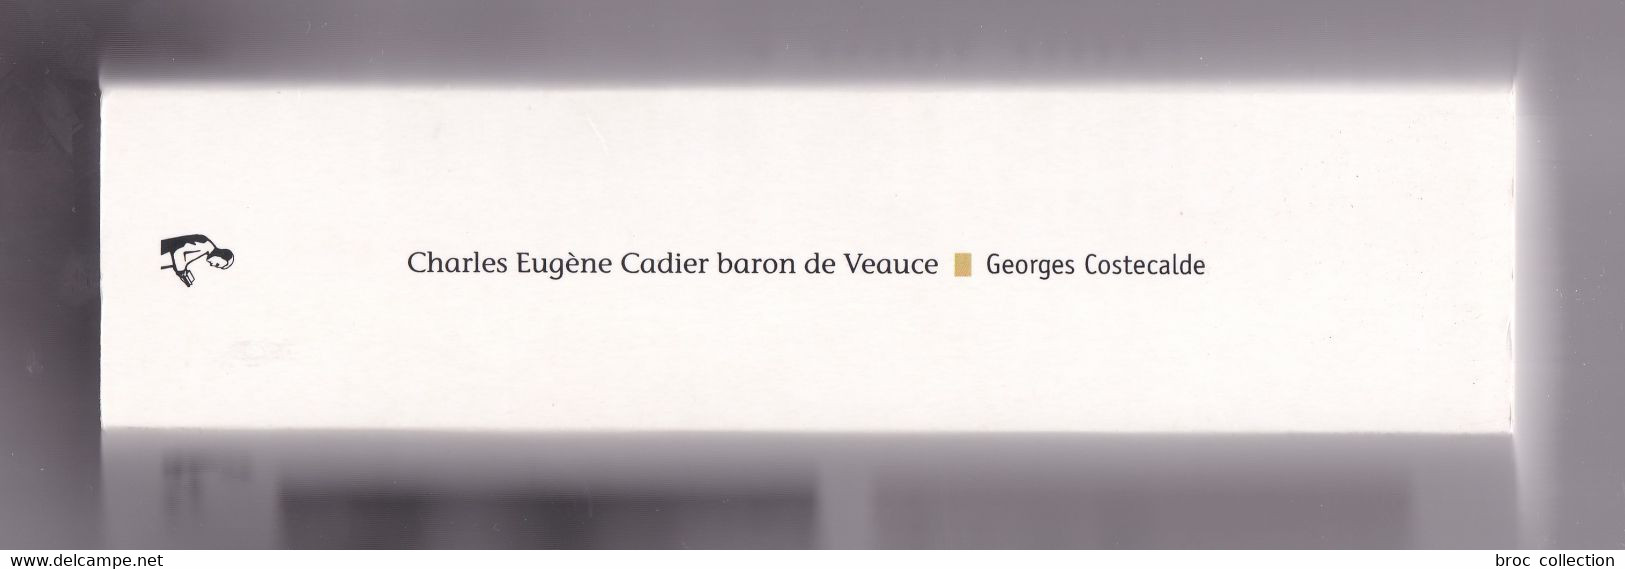 Charles Eugène Cadier, Baron De Veauce, Une Vie Dans Le Siècle 1820 - 1884, Georges Costecalde, 2010, Avec Envoi - Bourbonnais